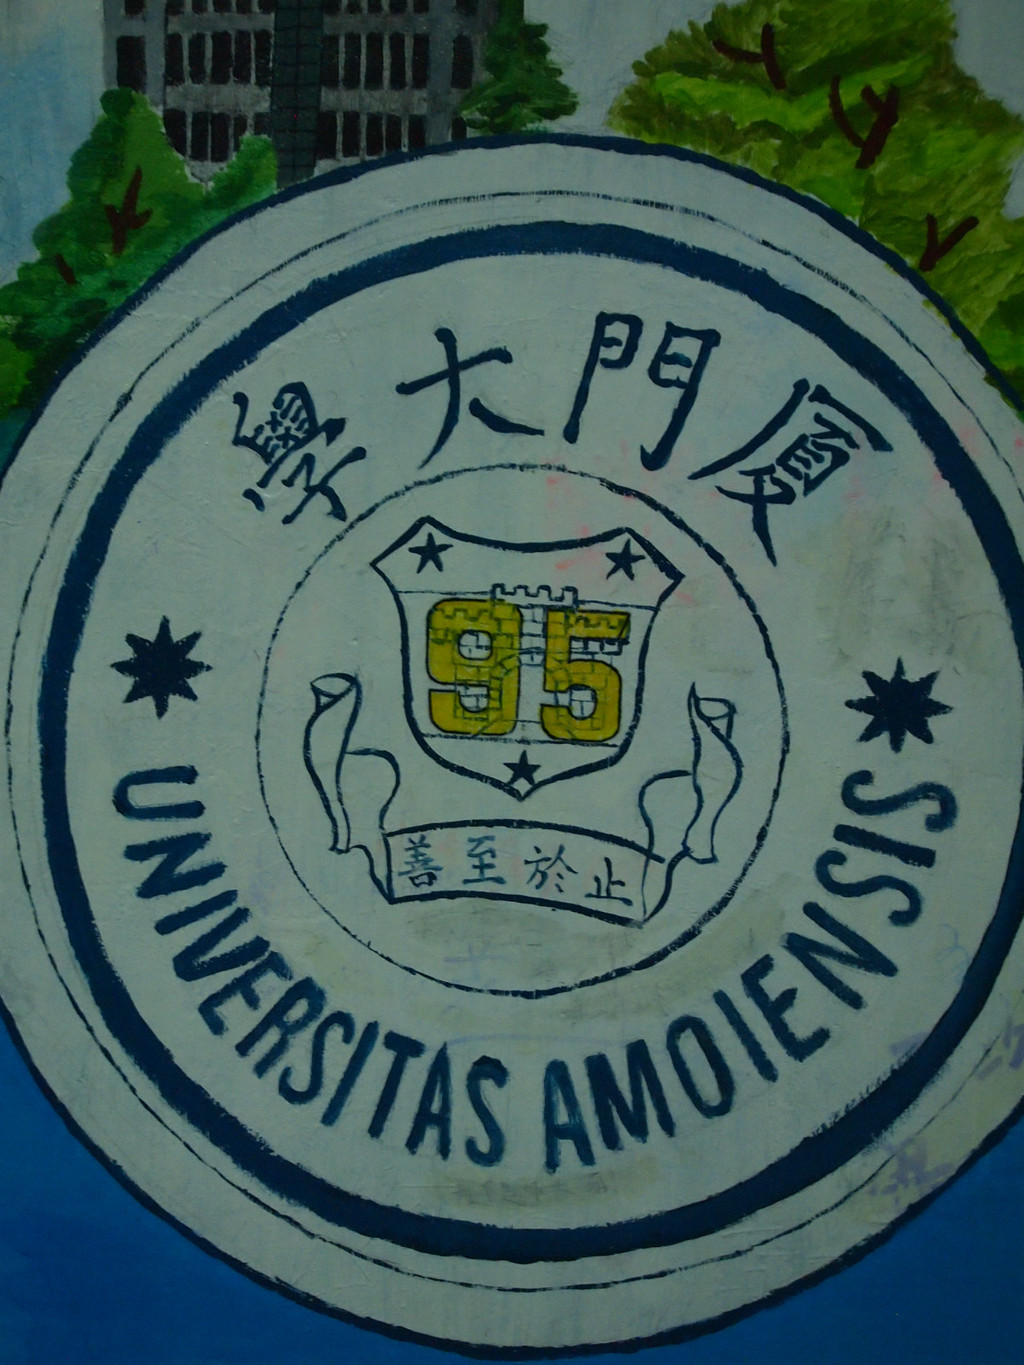 厦门大学的校徽,离开学校了才真正去看看校徽的样子.